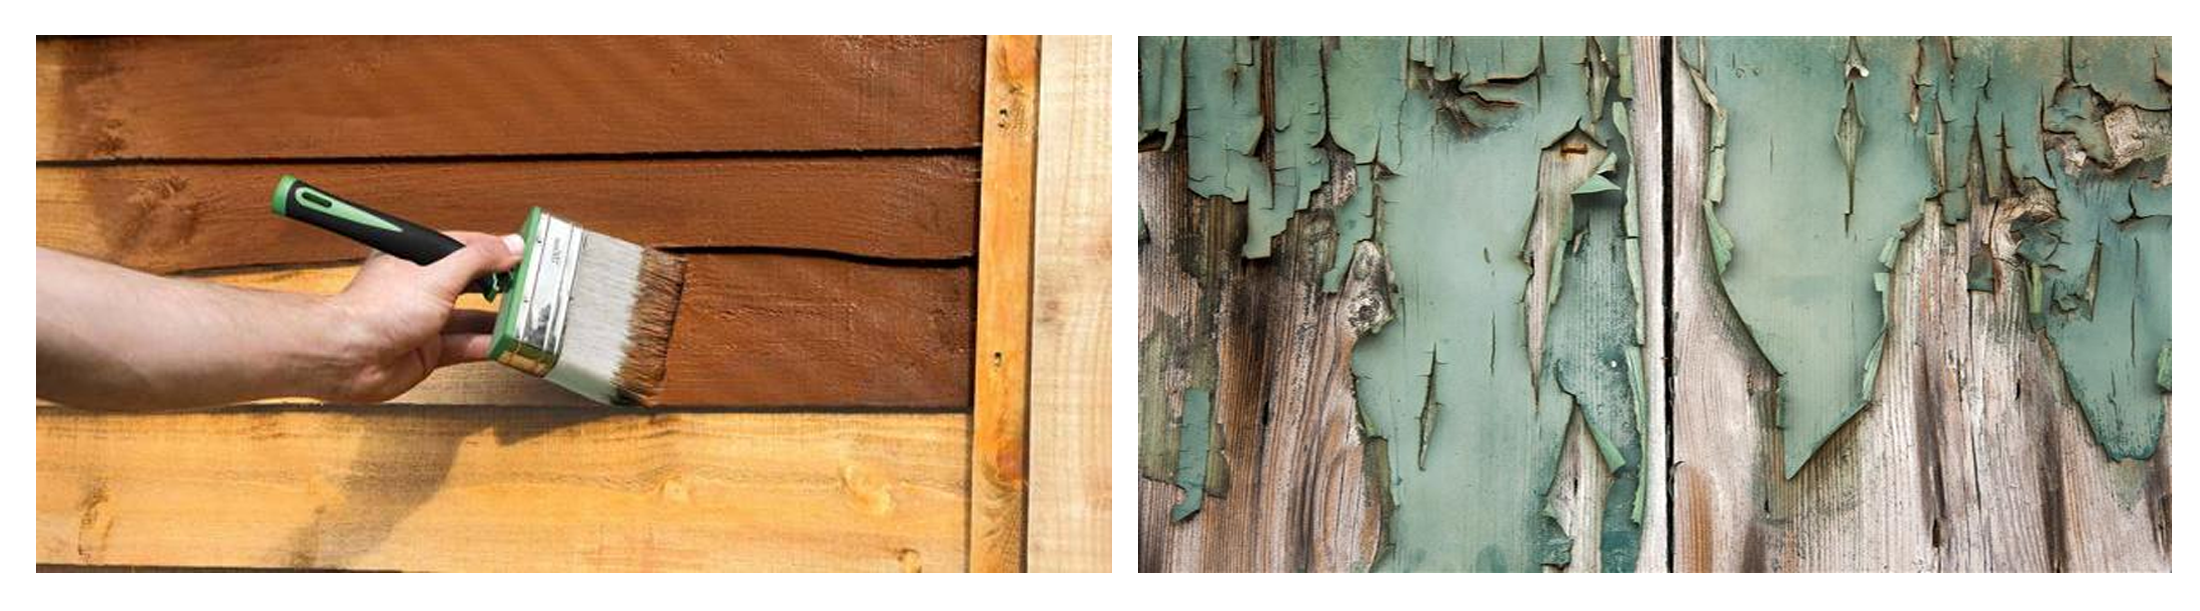 پوسته پوسته شدن رنگ های ضد آب کننده چوب از روی چوب